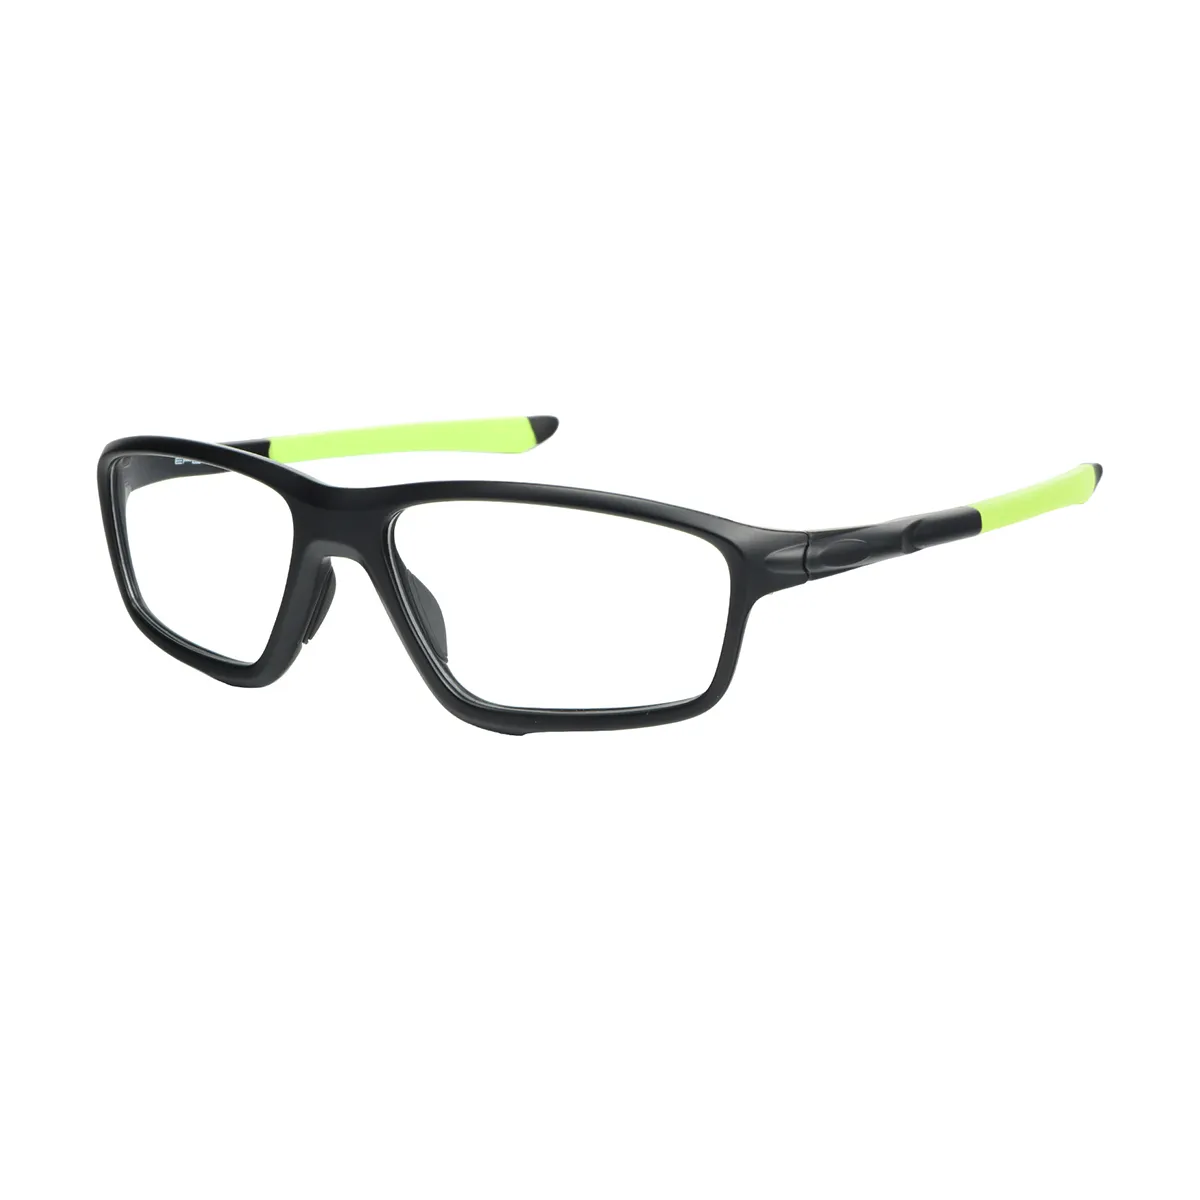 George - Rectangle Black-Green Glasses for Men & Women